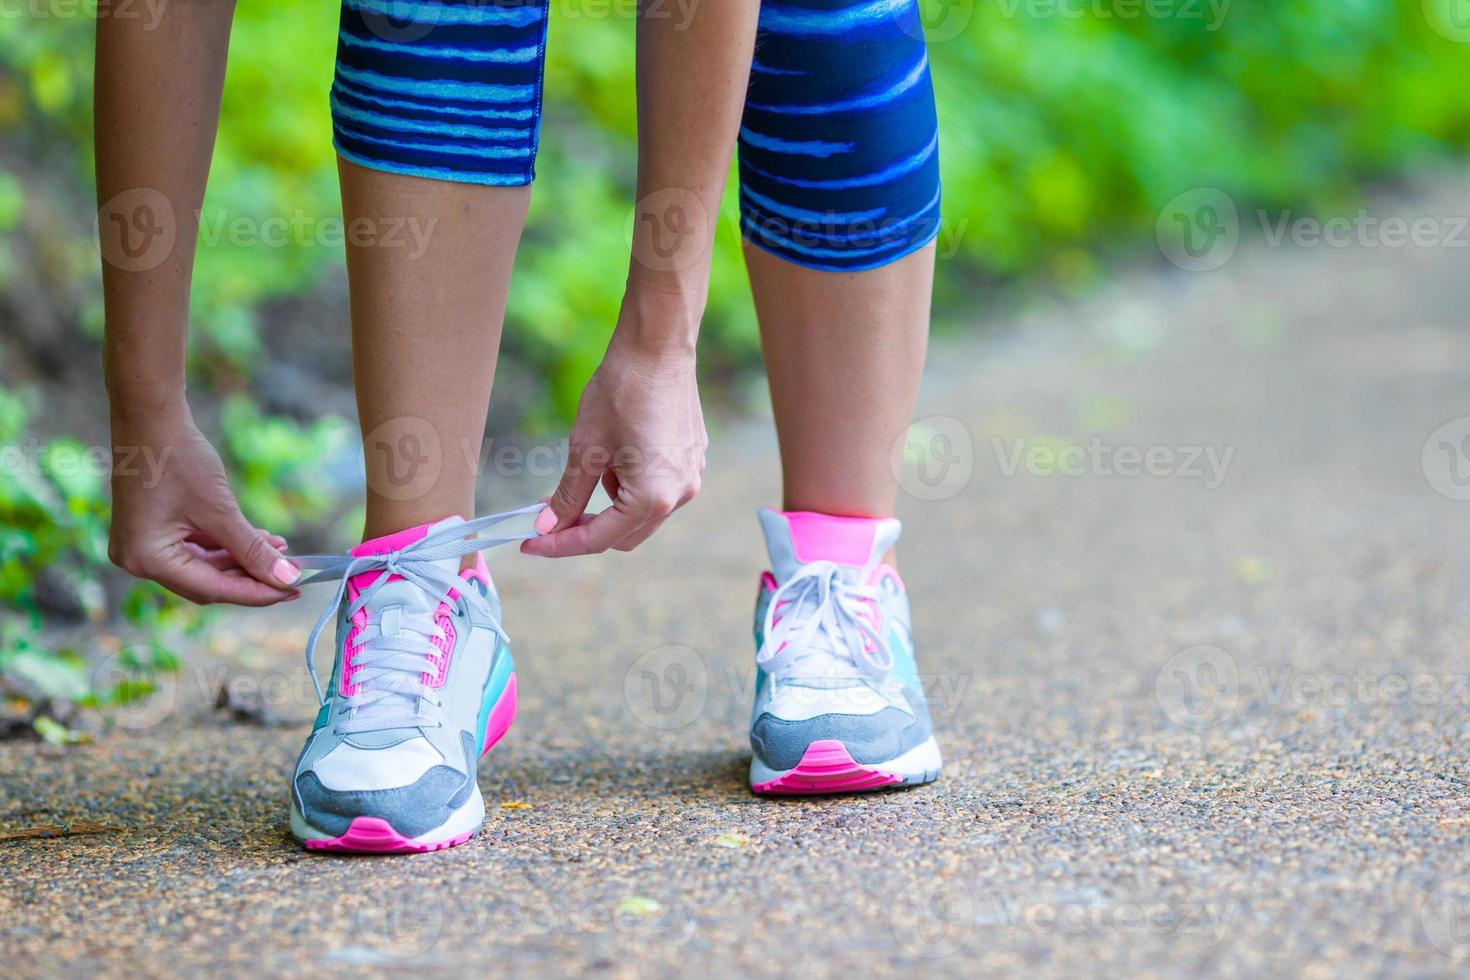 primer plano en el zapato de la atleta runner mujer pies corriendo en la carretera foto